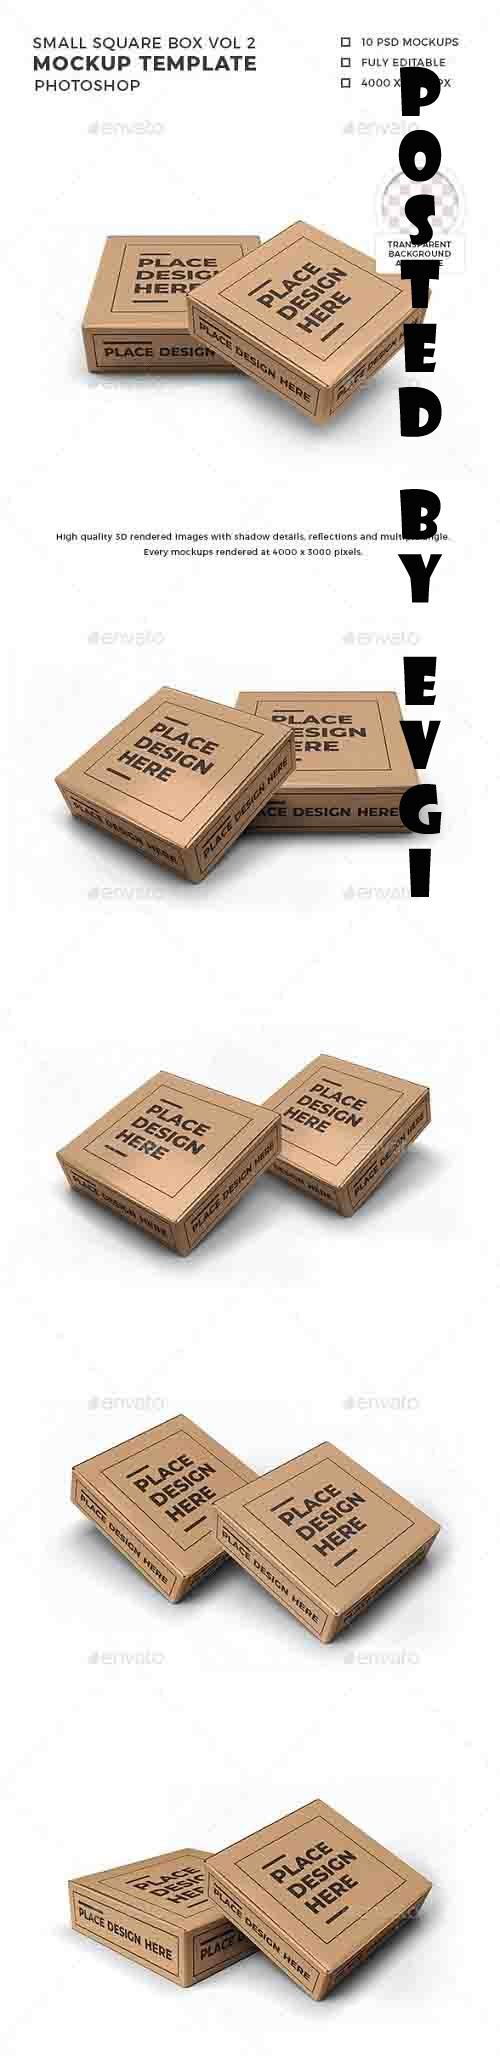 Small Square Box Mockup Template Vol 2 - 32570172